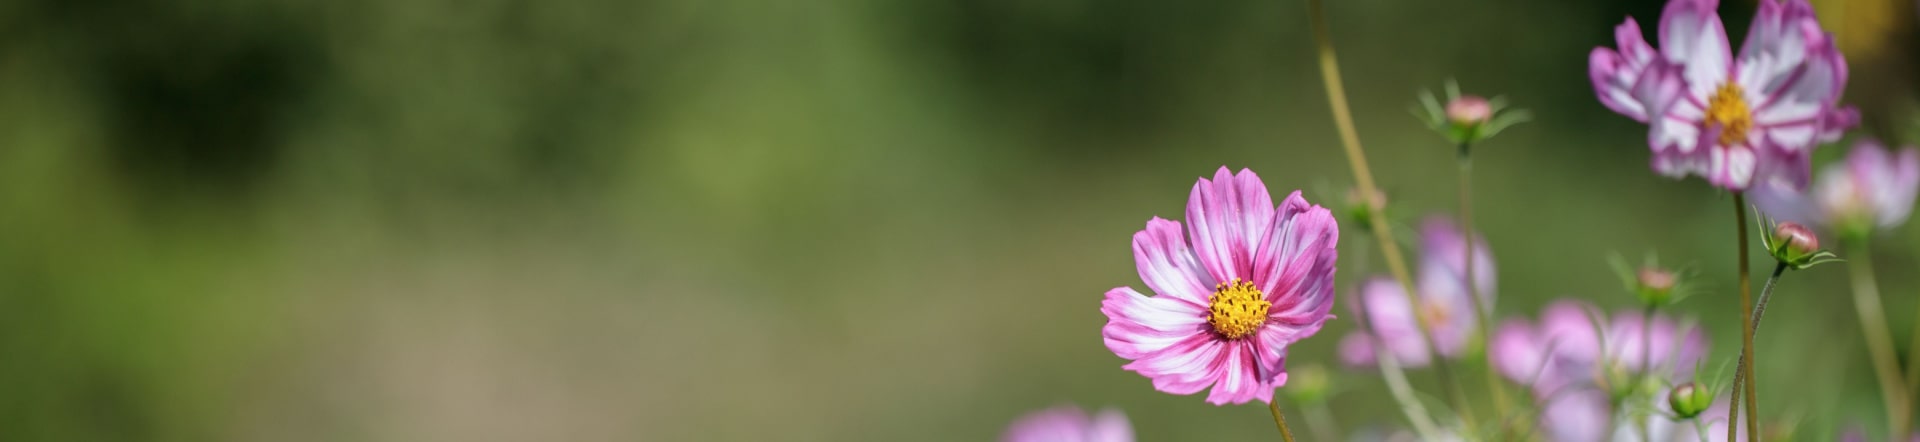 Einjährige Blumen (Cosmos bipinnatus)